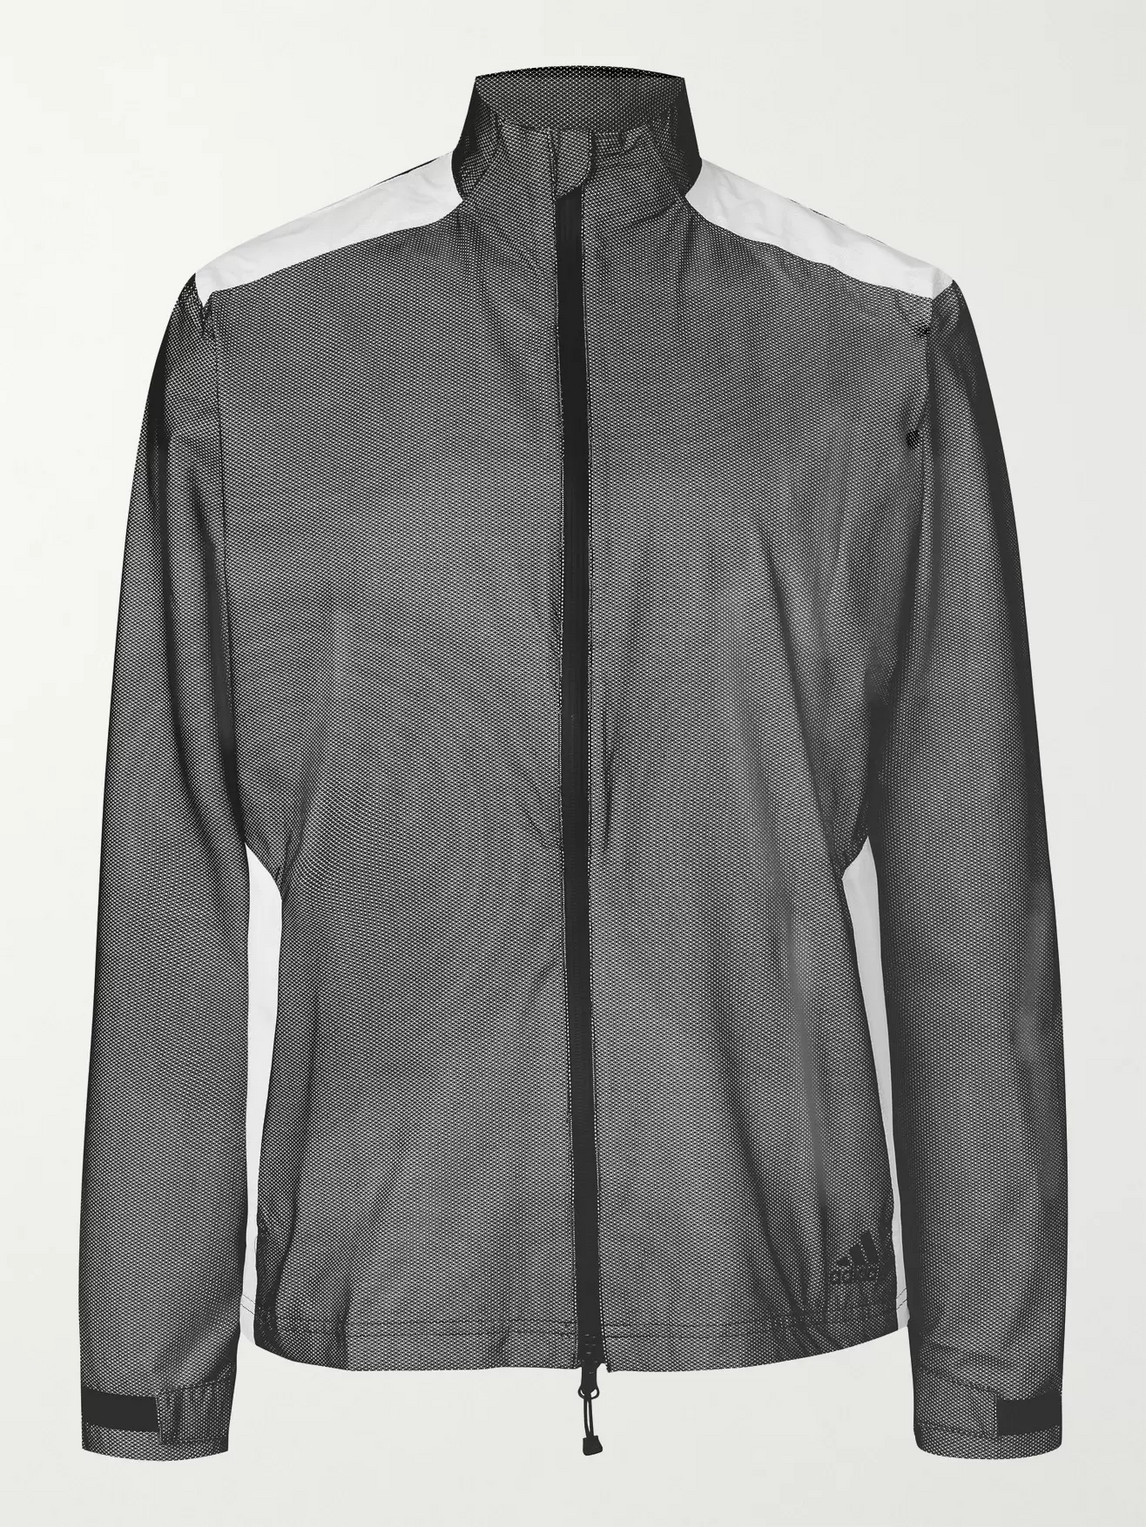 Adidas Golf Rain.rdy Shell Golf Jacket In Black